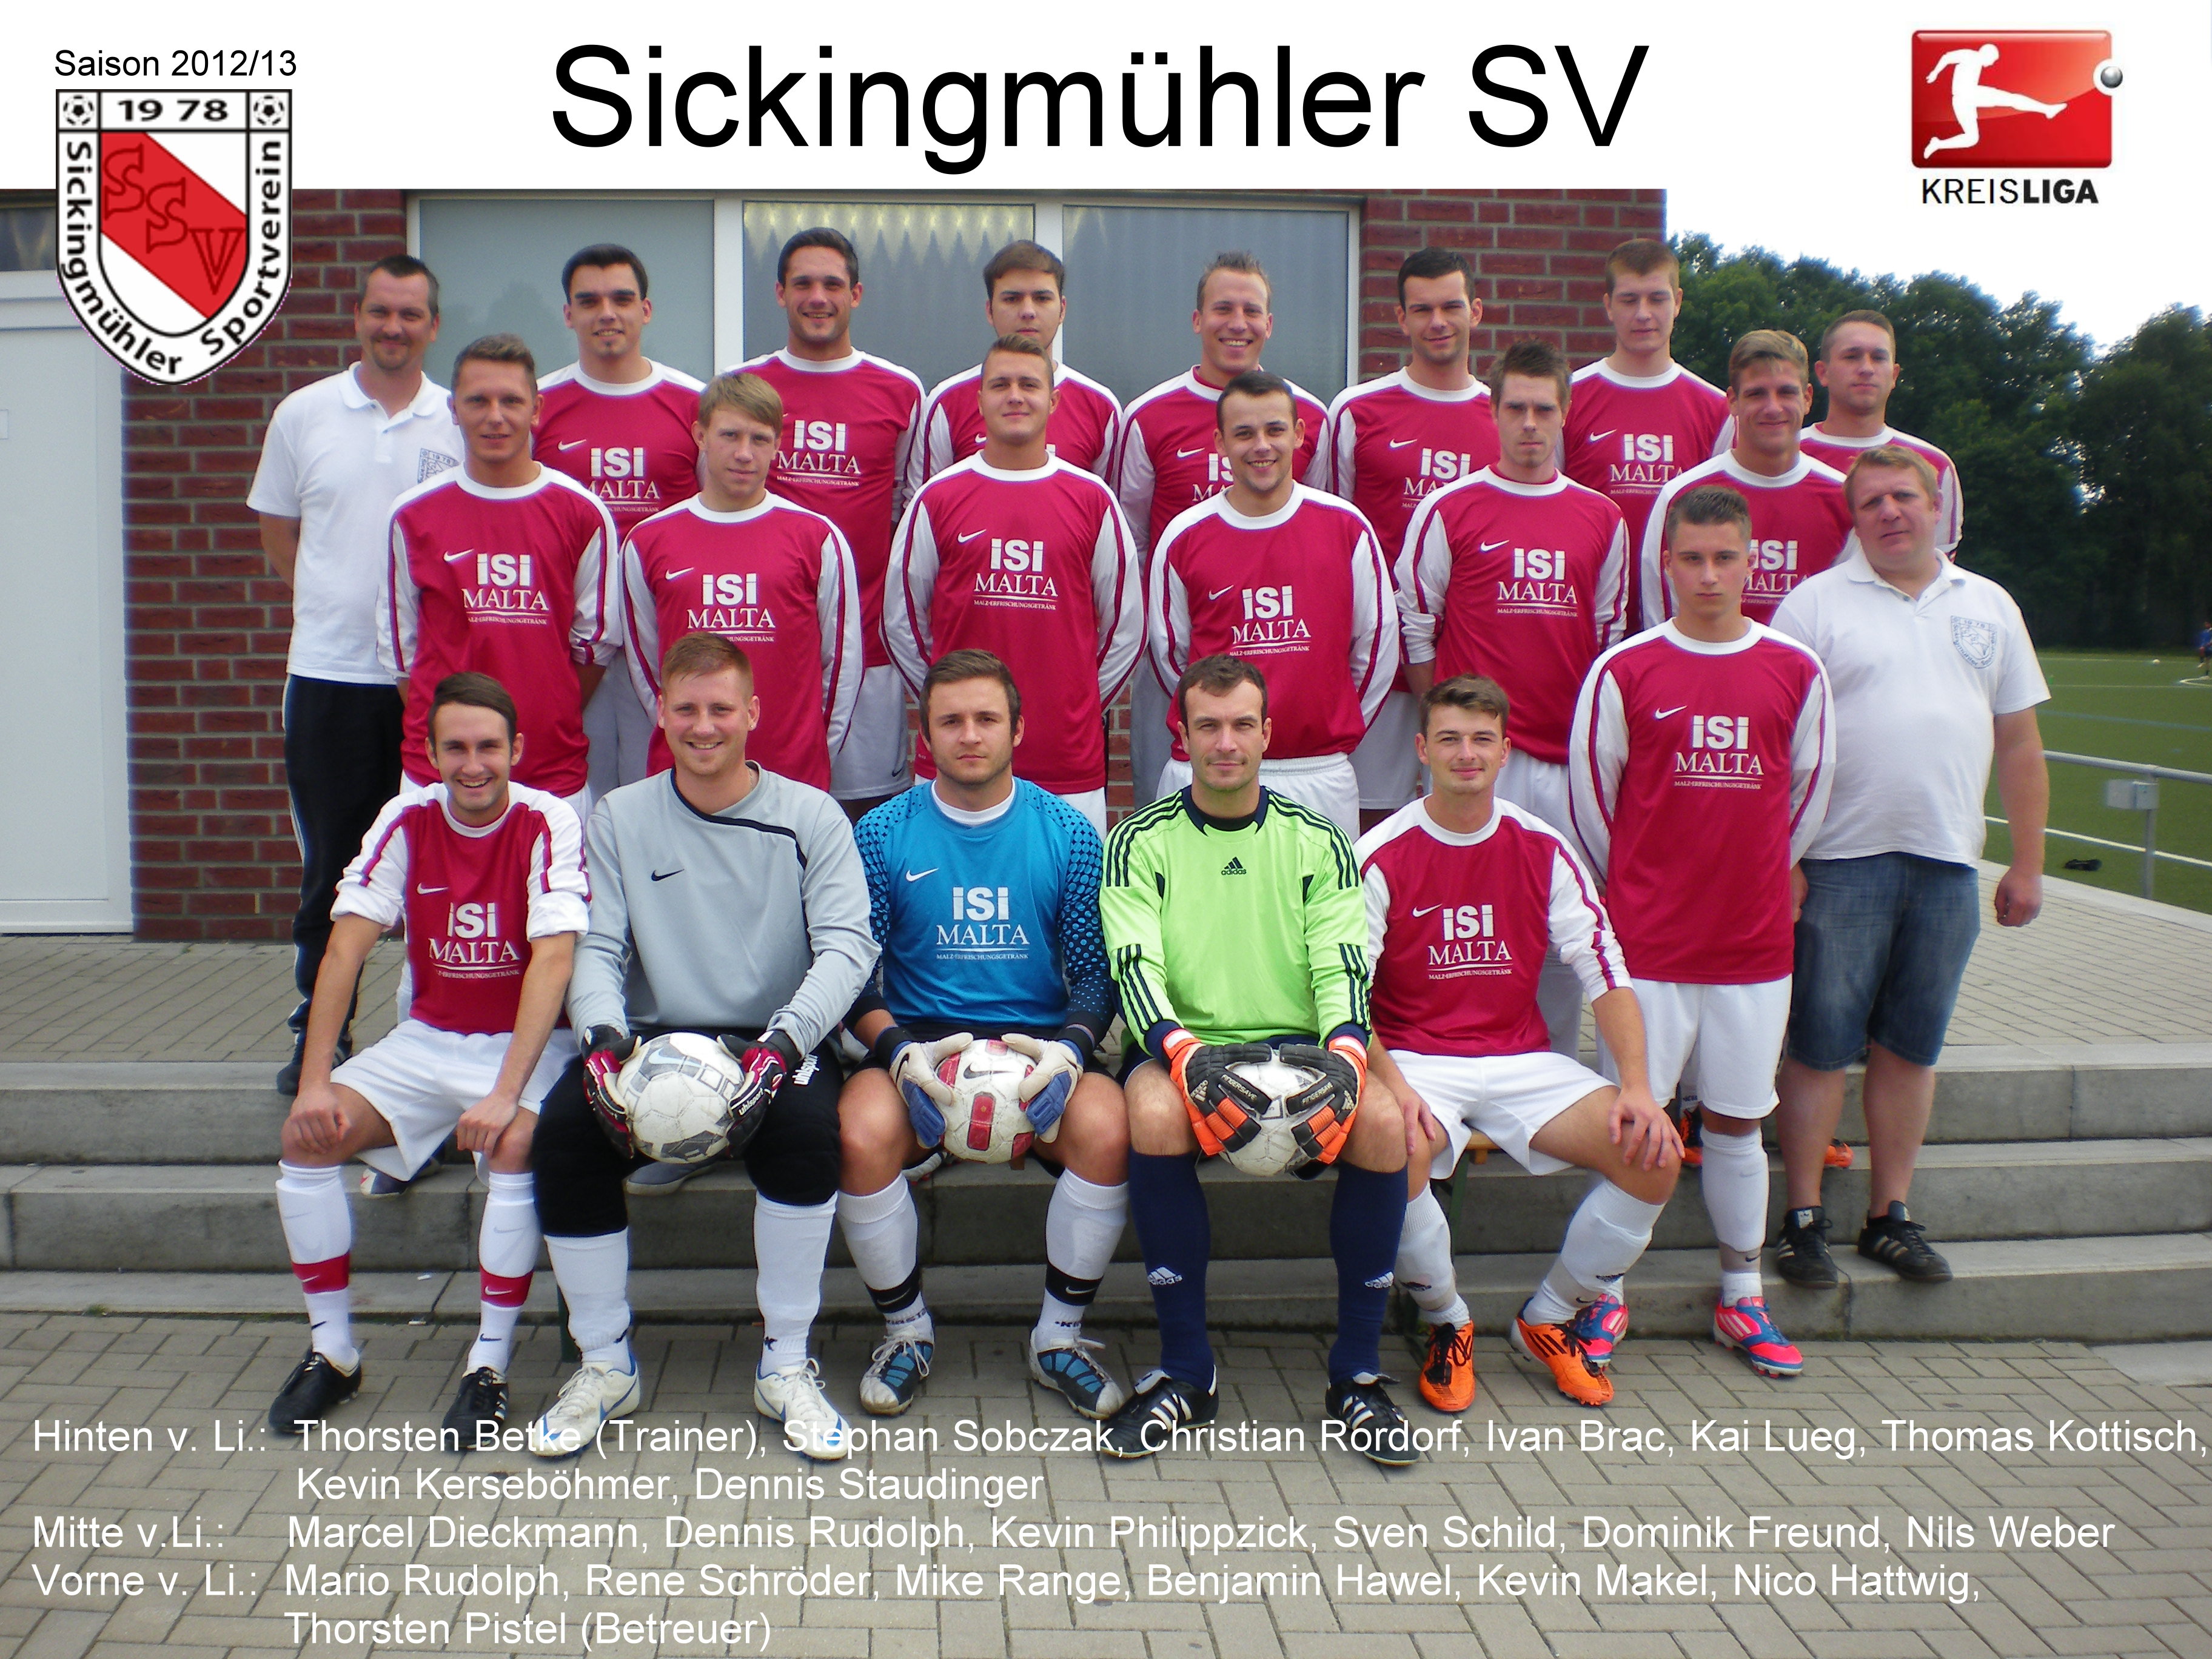 Mannschaftsfoto/Teamfoto von Sickingmhler SV